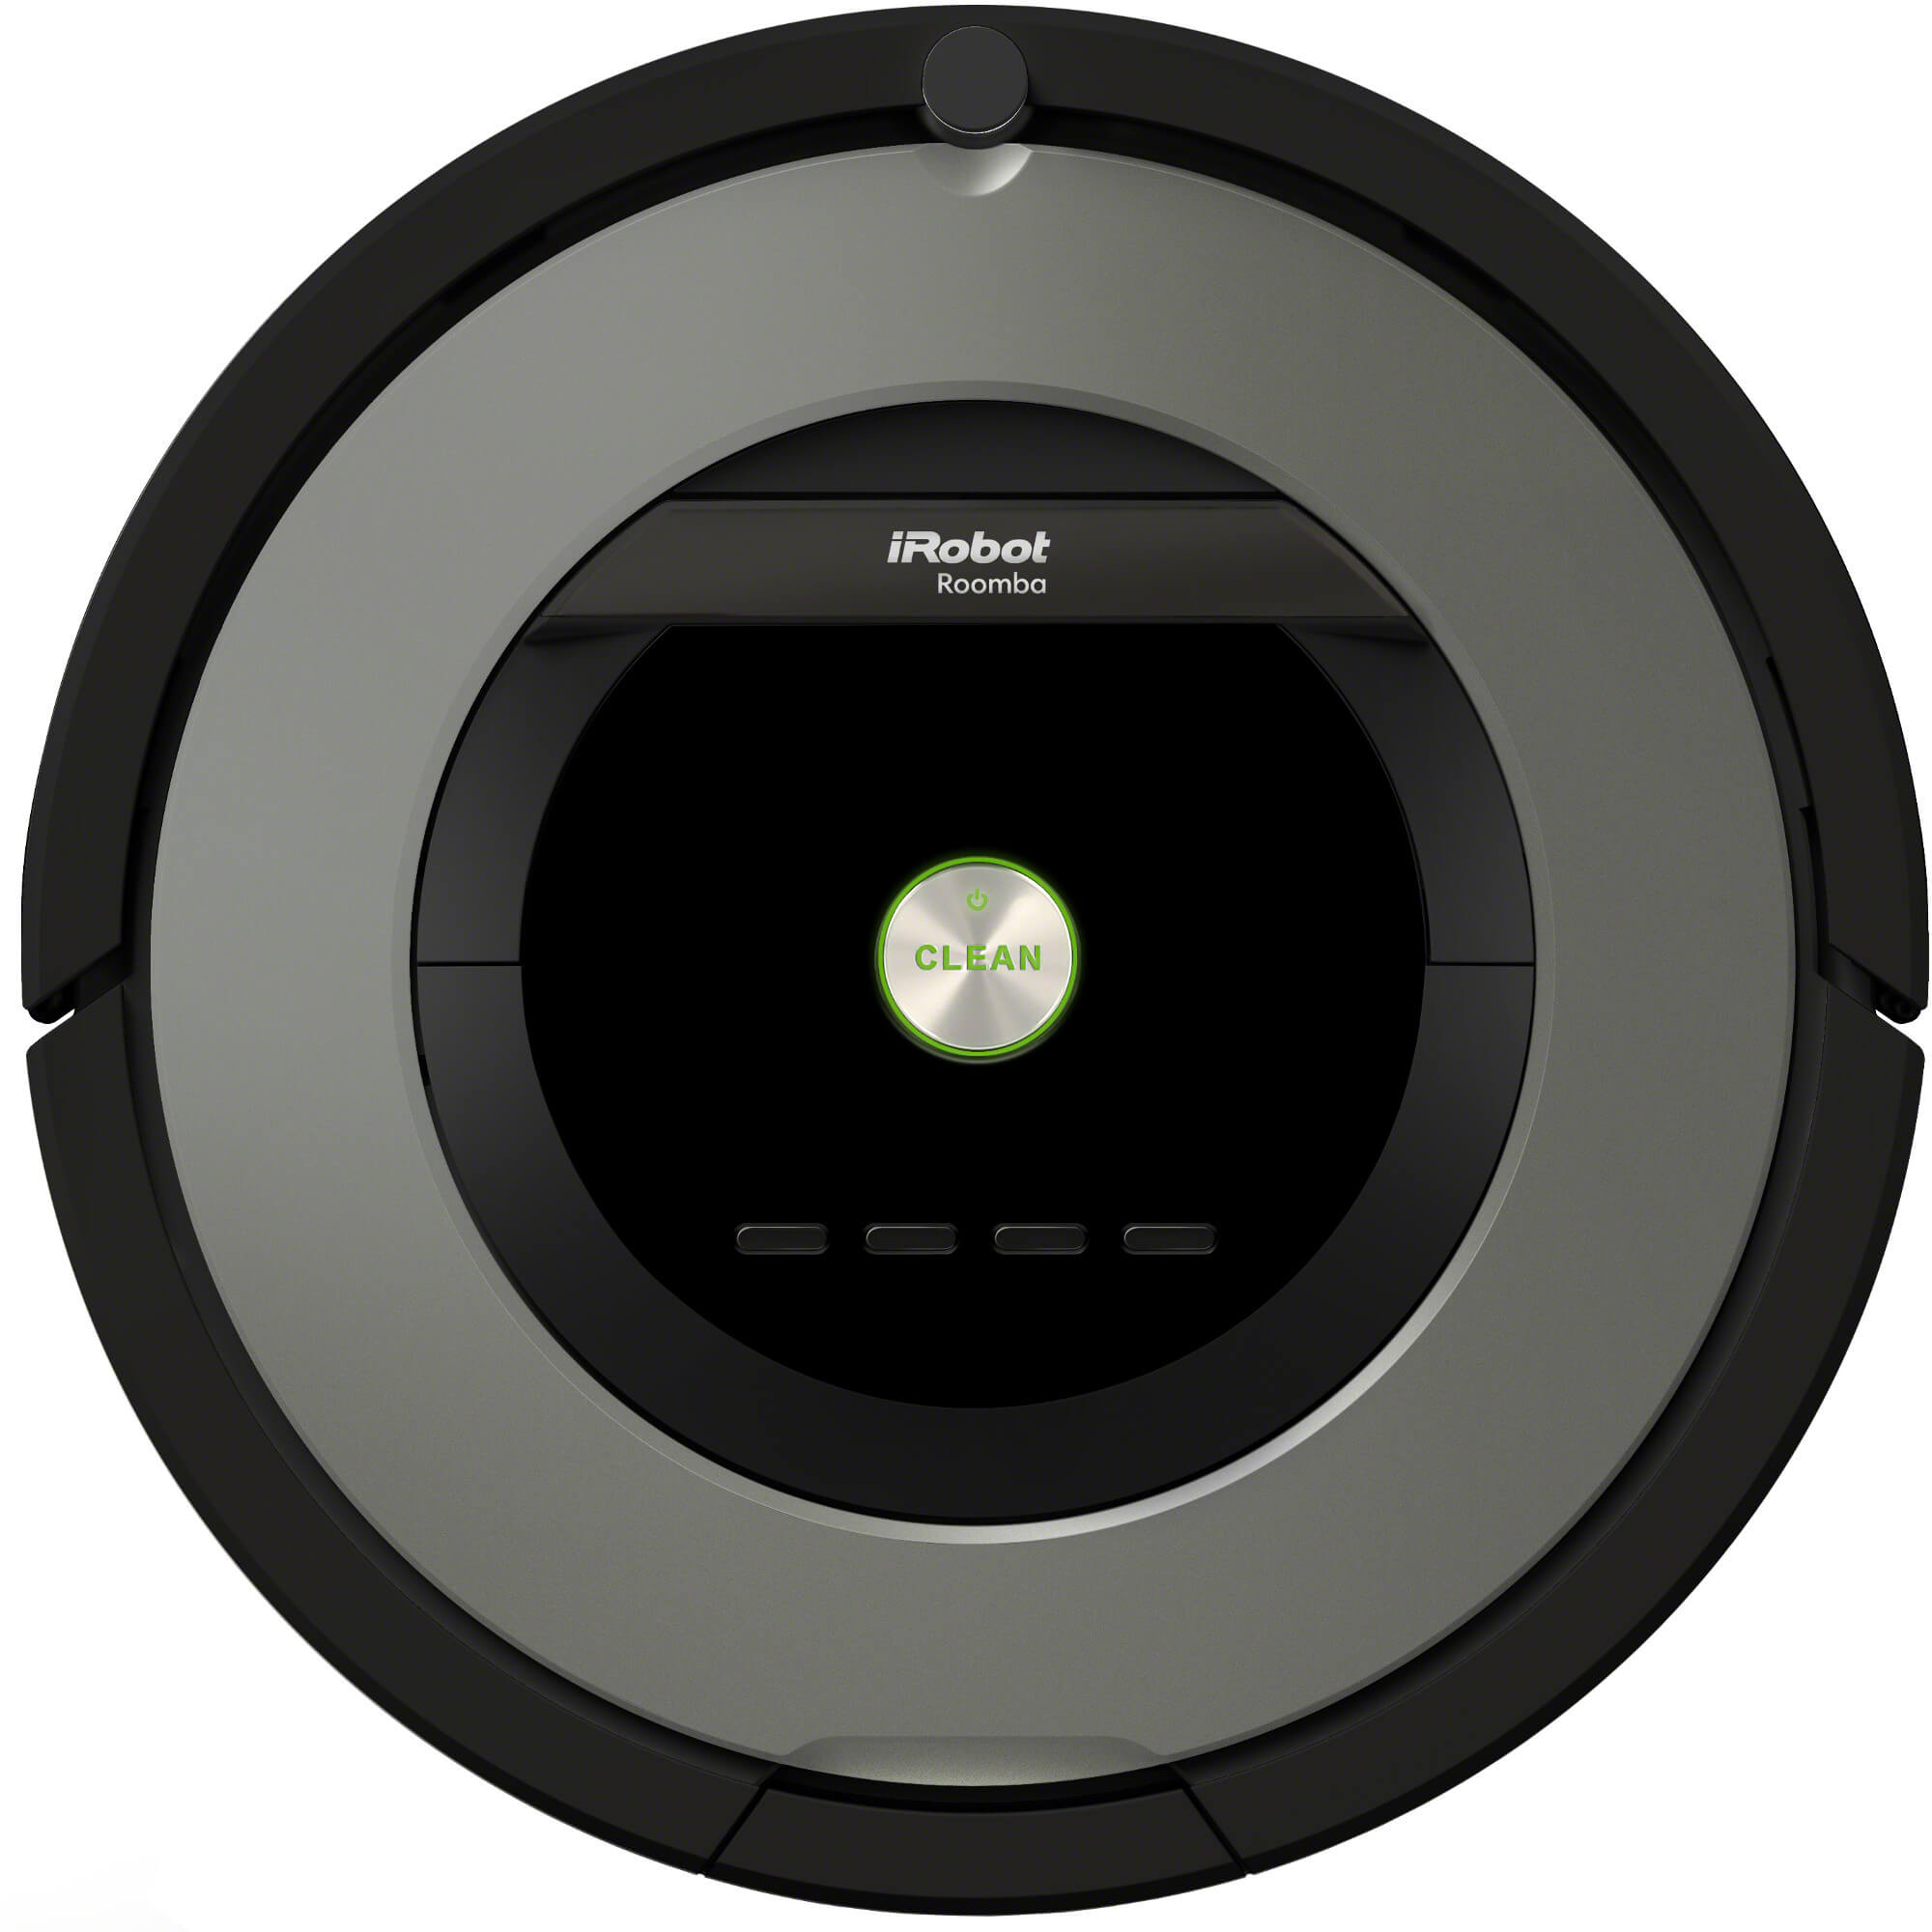  Robot de aspirare iRobot Roomba 866, 33 W, 5.2 kWh/an 